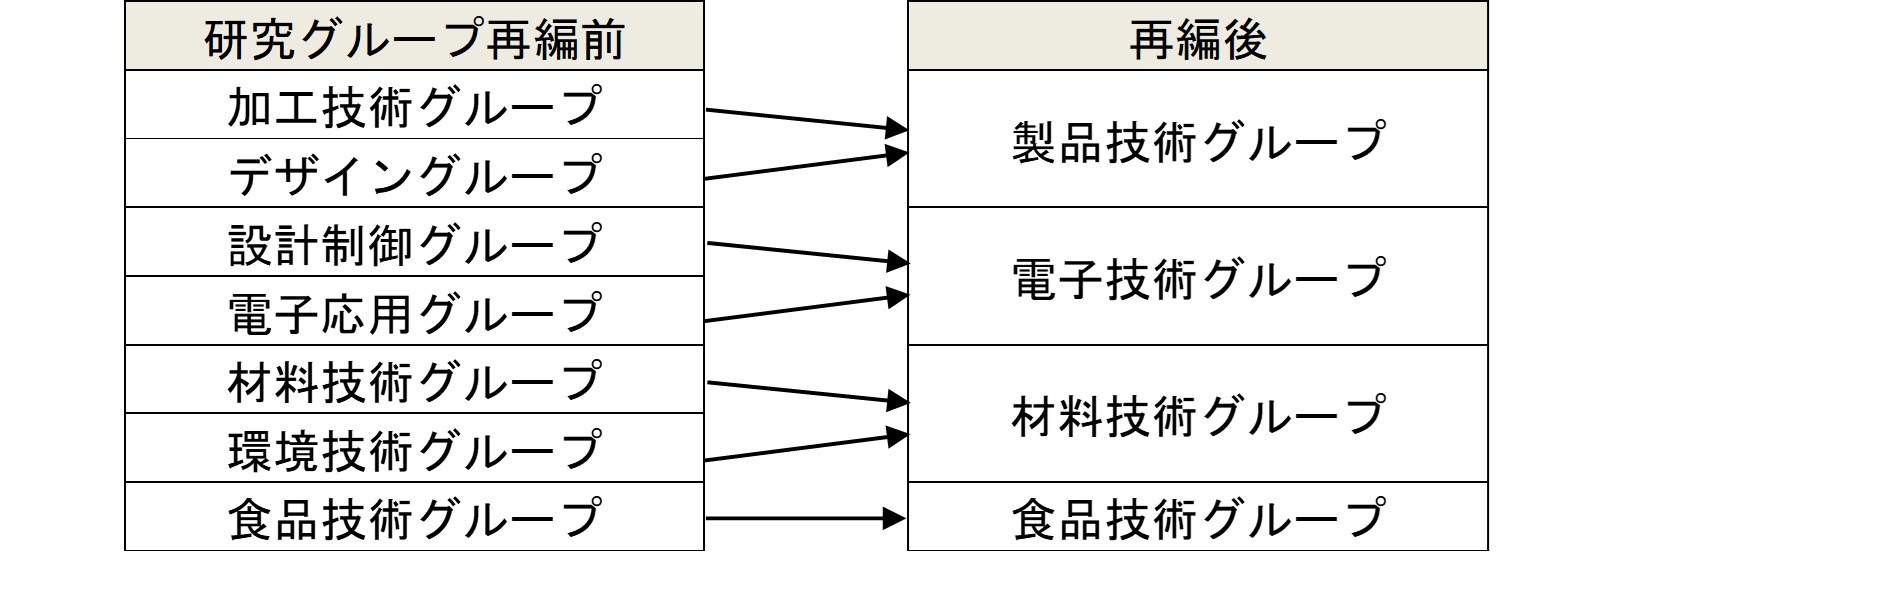 図1.jpg